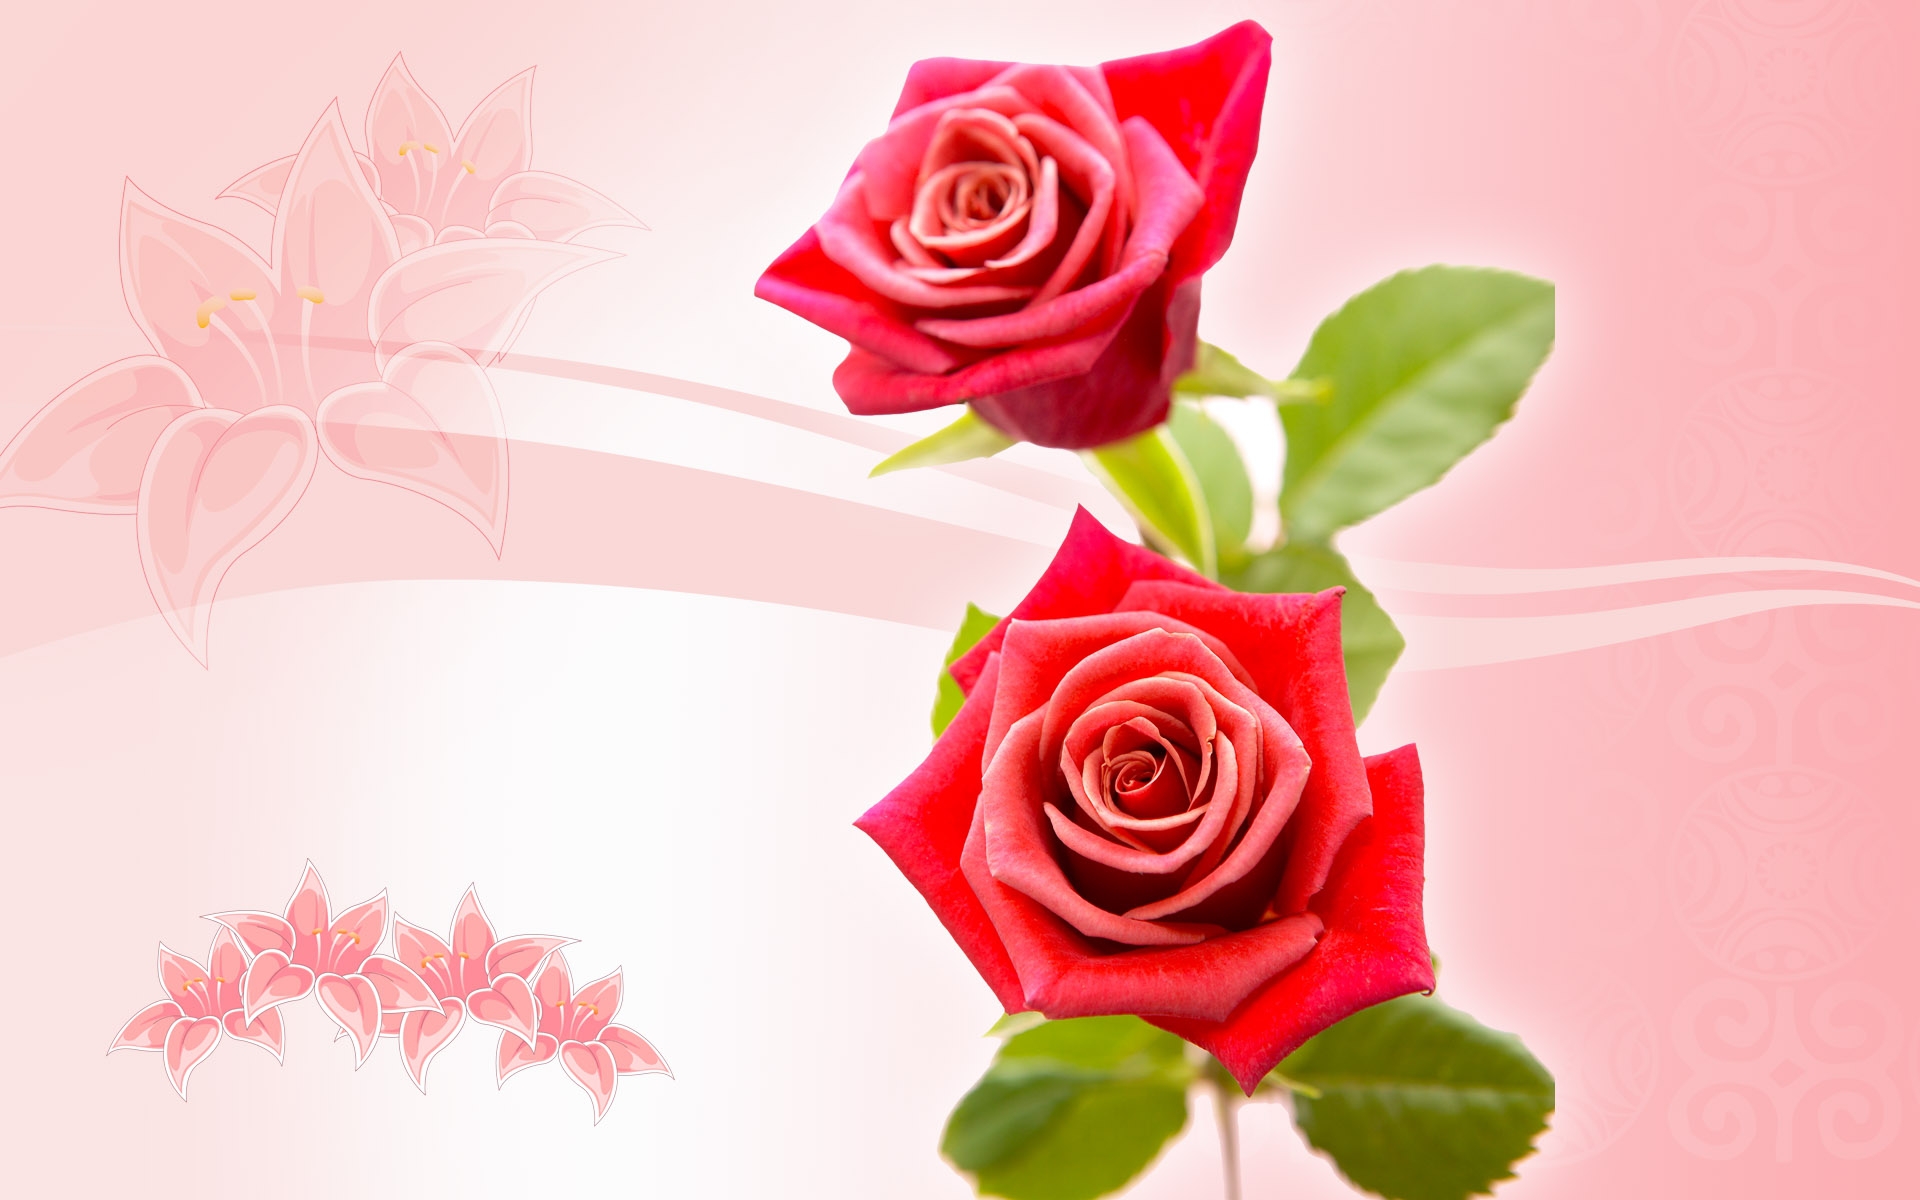 Скачать обои бесплатно Цветы, Фон, Розы, Растения картинка на рабочий стол ПК